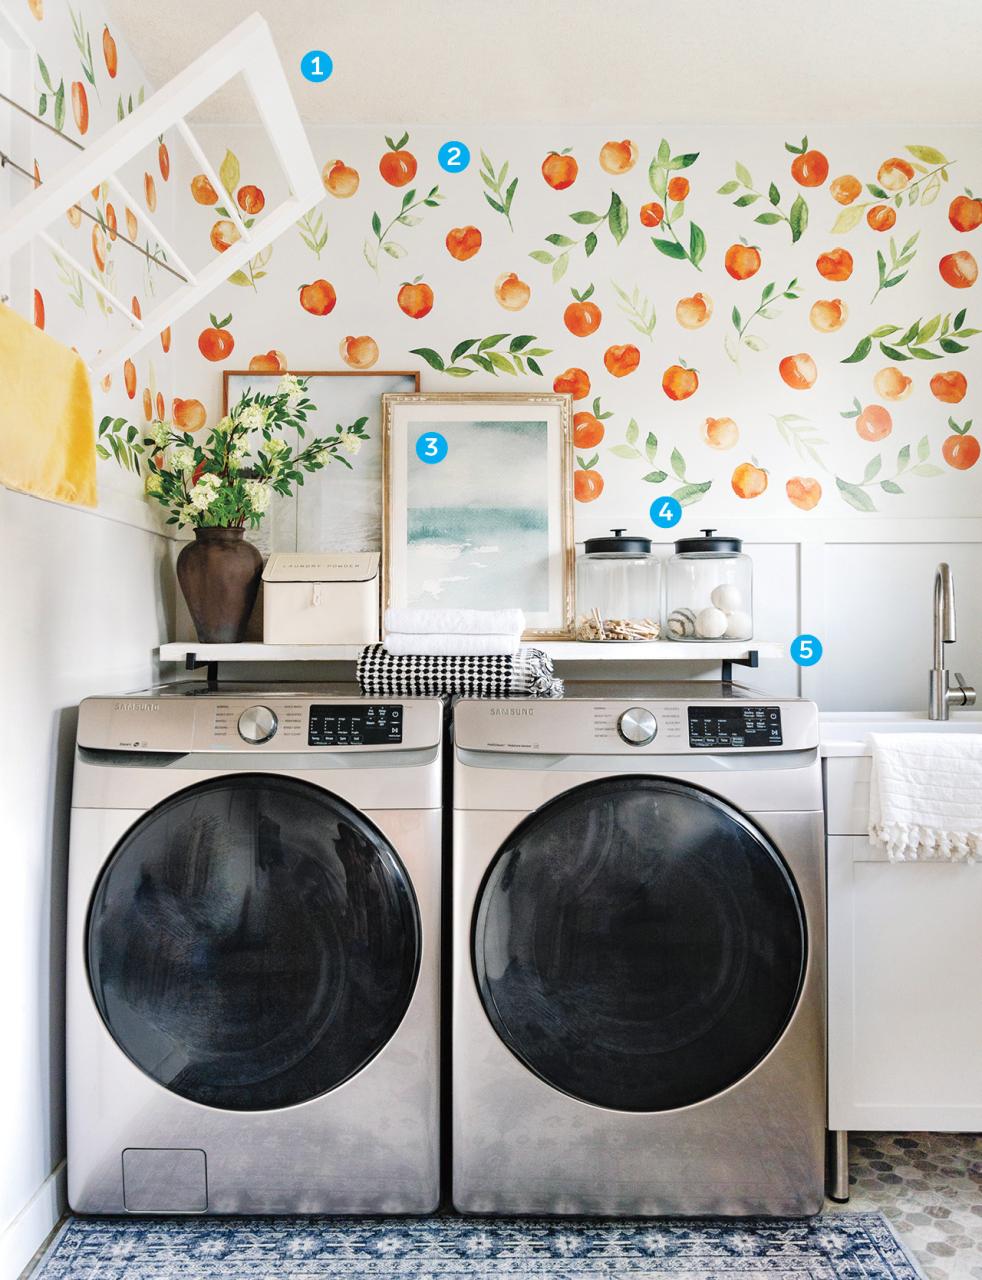 Bahar çamaşır odası makyajıyla ilgili bir makale için güzel bir çamaşır odasının fotoğrafı.